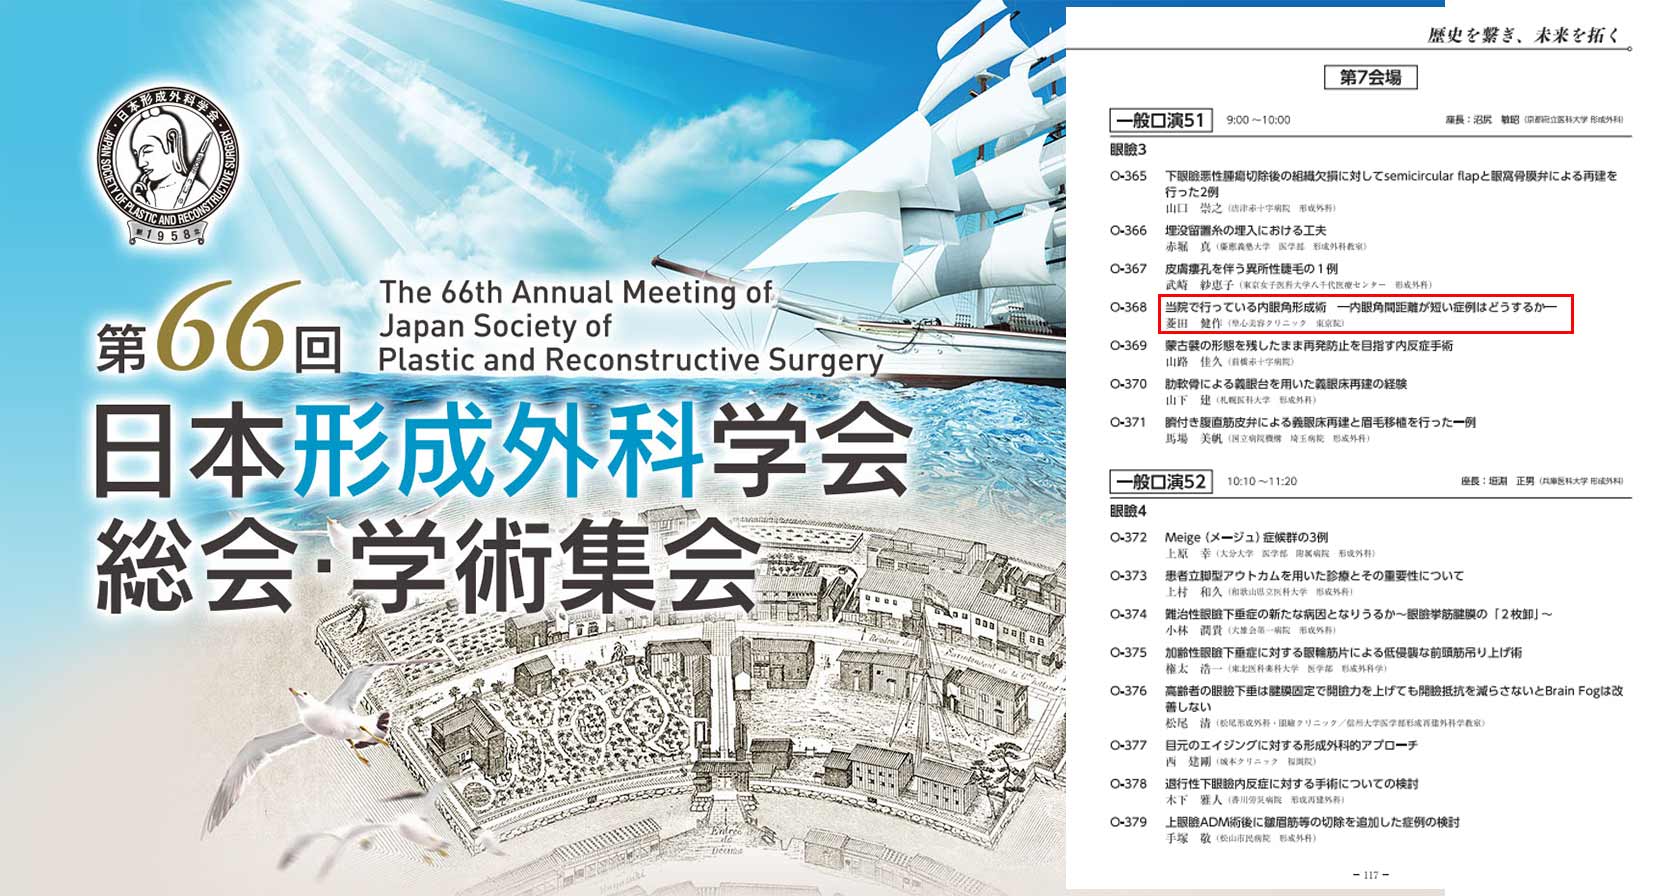 「第66回 日本形成外科学会総会・学術集会」で菱田医師が発表を行いました。